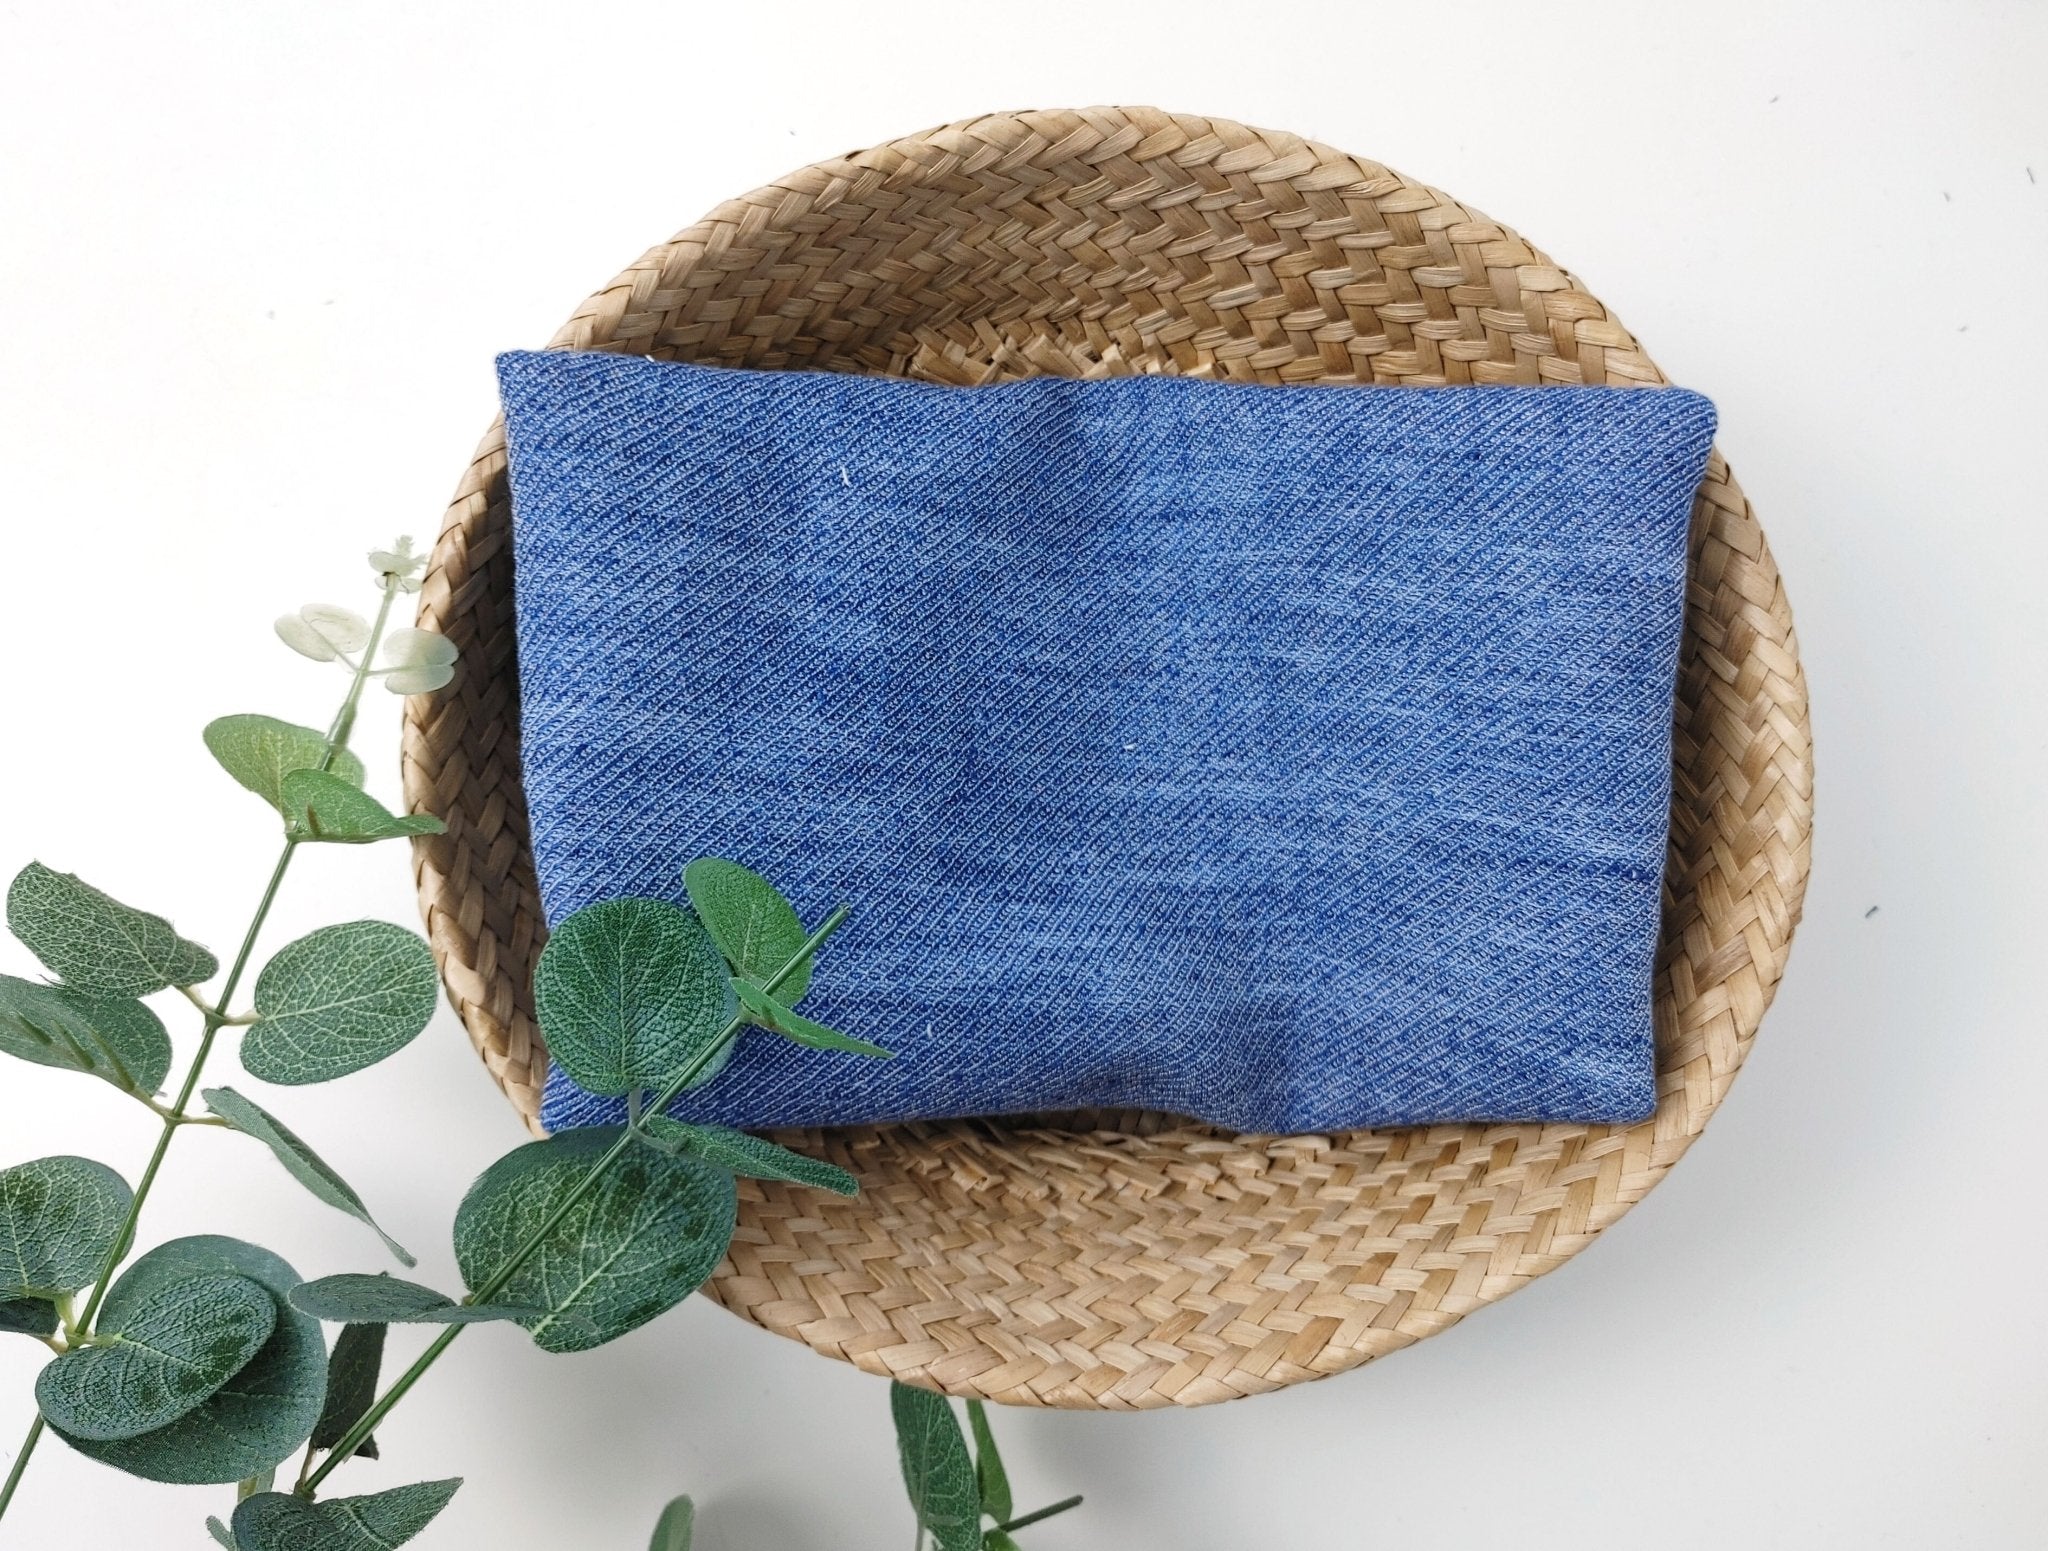 Blue Linen Rayon Cotton Blend Semi-Double-Face Fabric 7146 - The Linen Lab - Blue